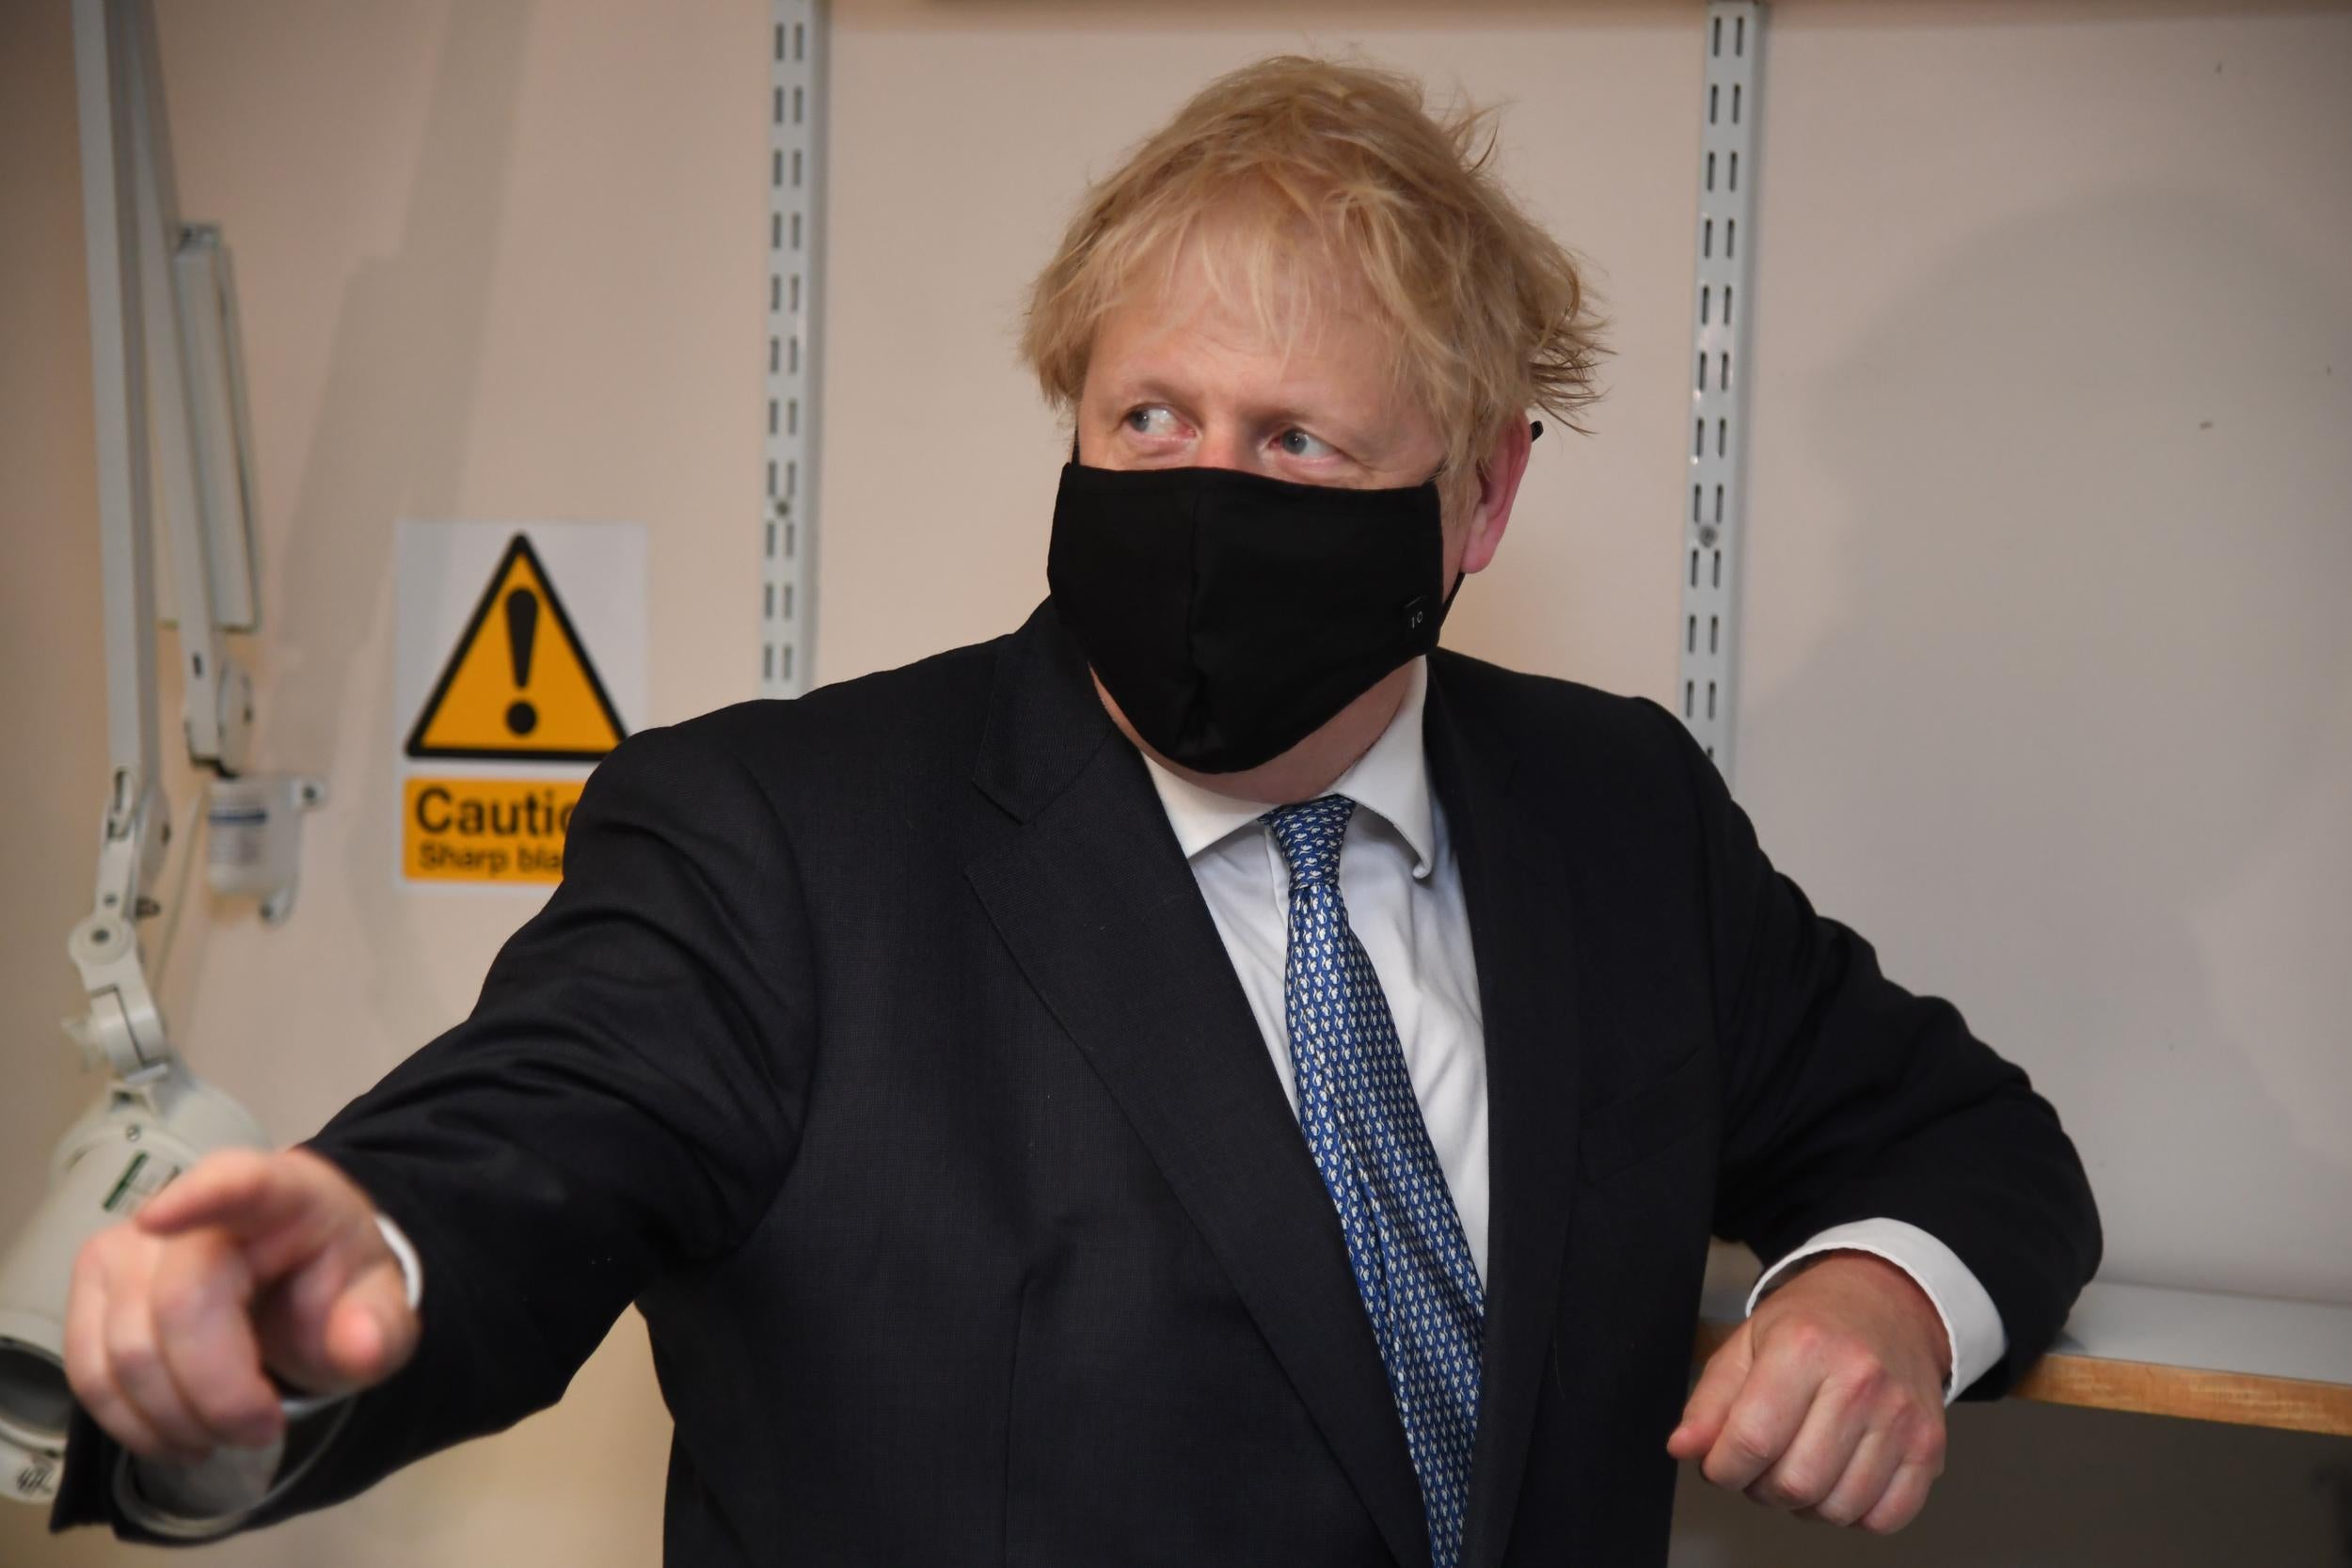 Coronavirus: Boris Johnson U-turns on advice against face masks in schools